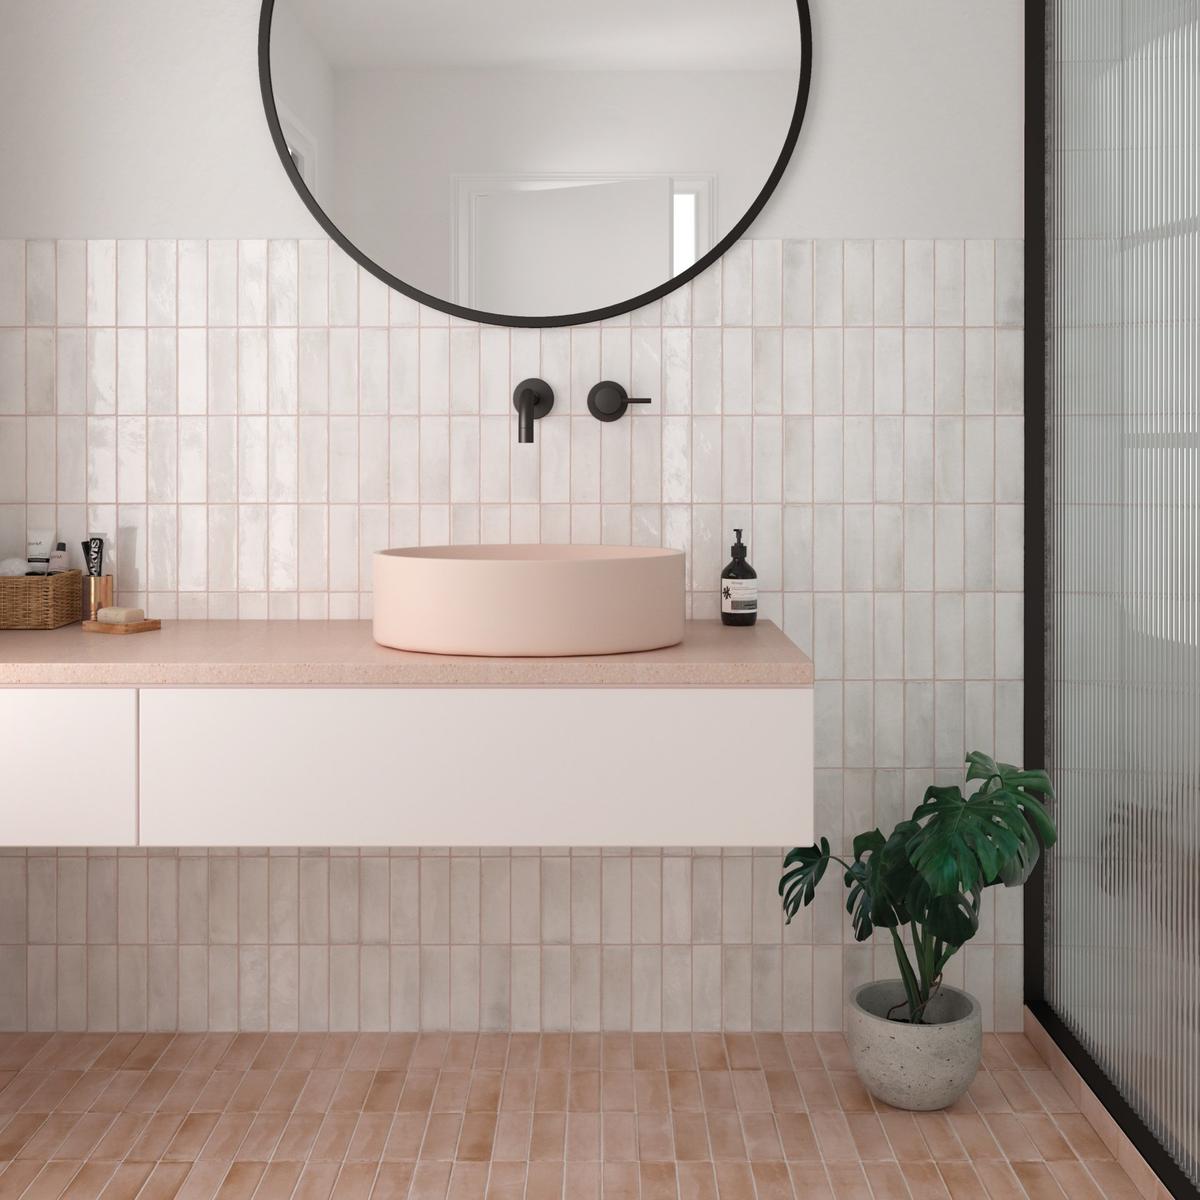 Zellige blanc éclatant légère nuance crème 5X15 dans une salle de bain tons pastel vasque rose, miroir rond, plantes